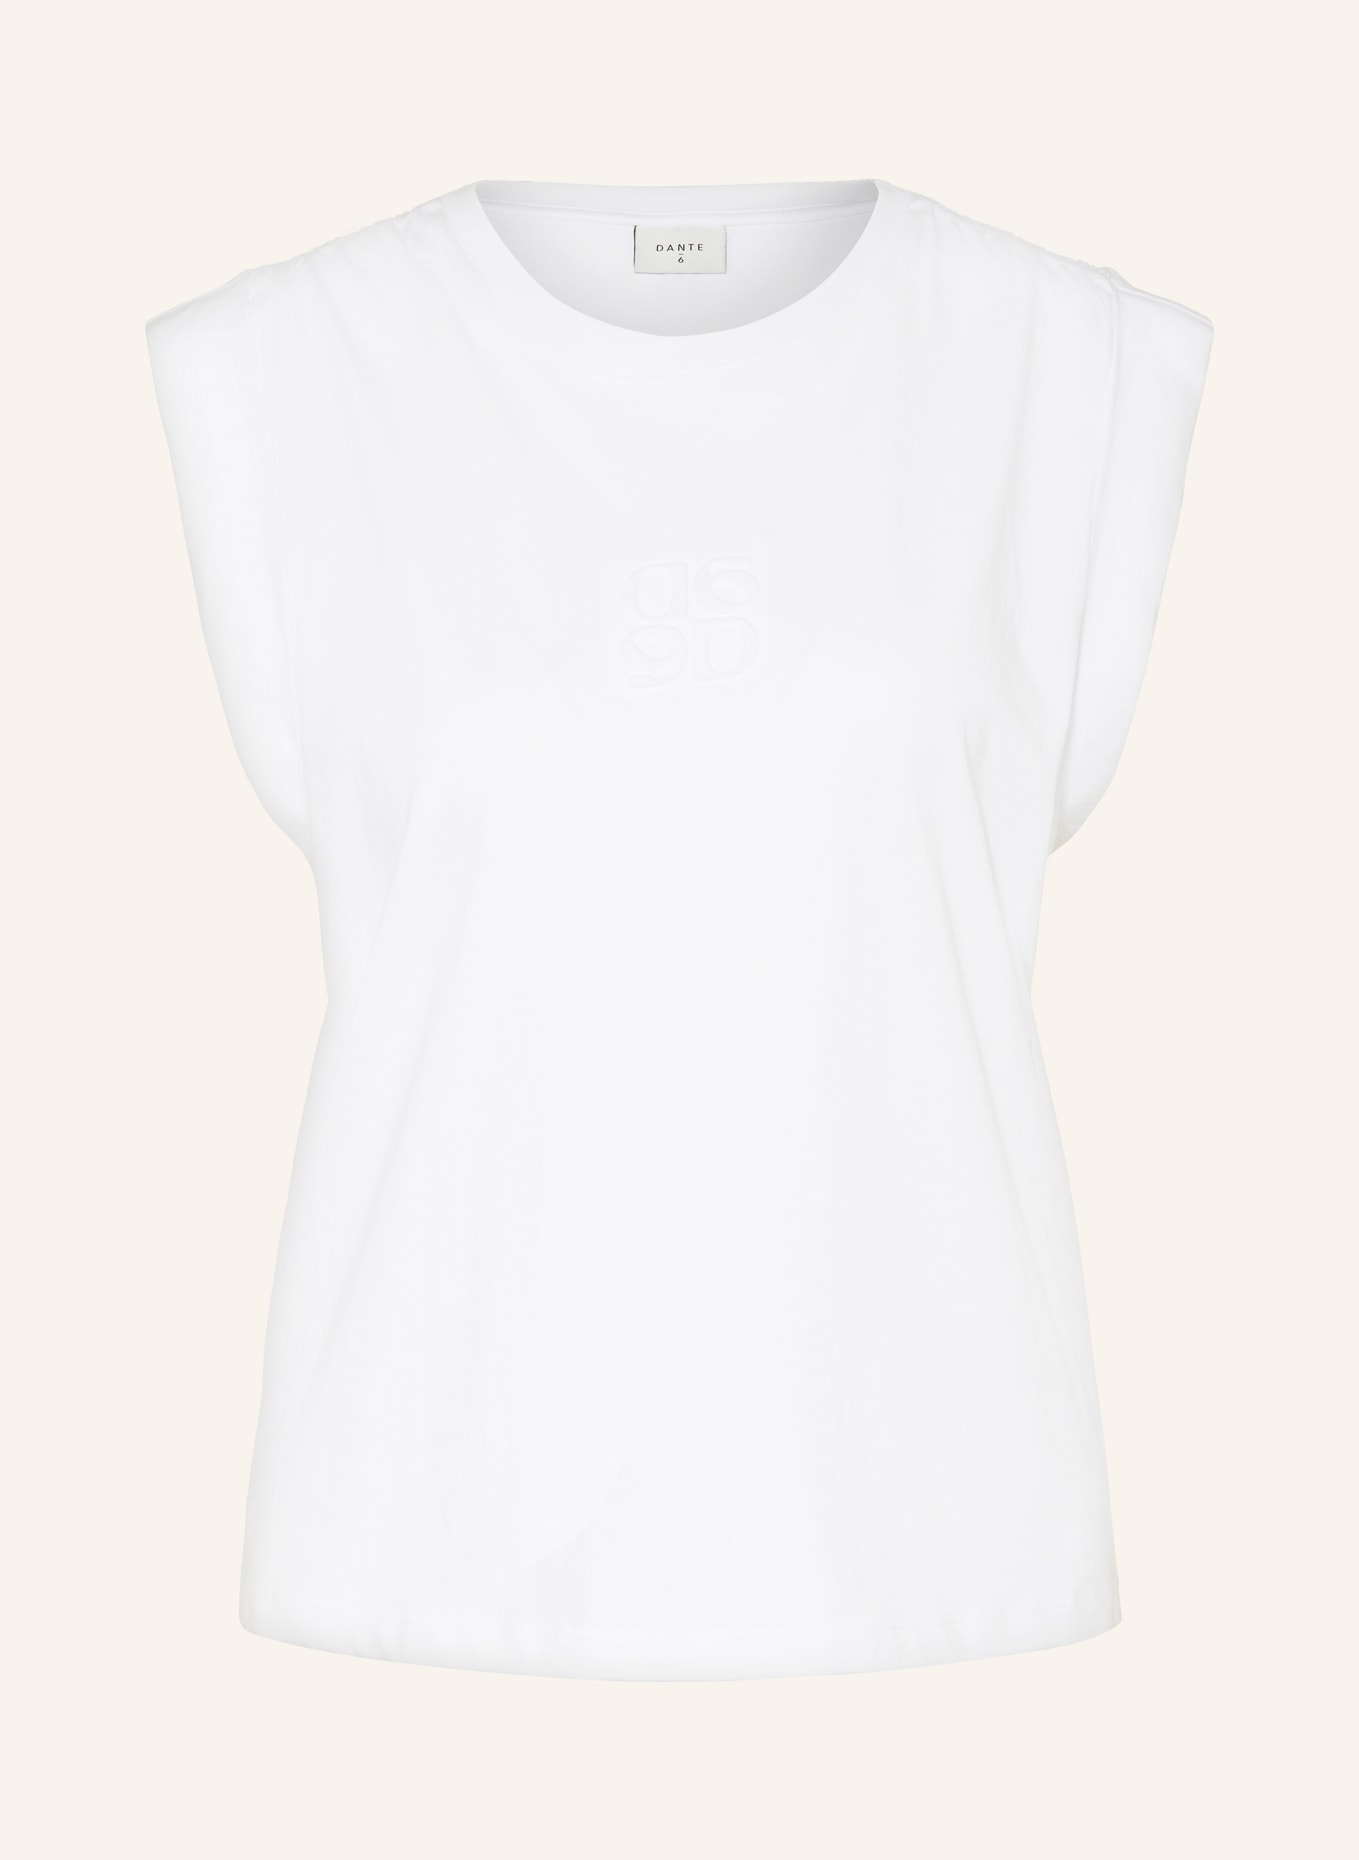 DANTE6 T-shirt SPARROW, Color: WHITE (Image 1)